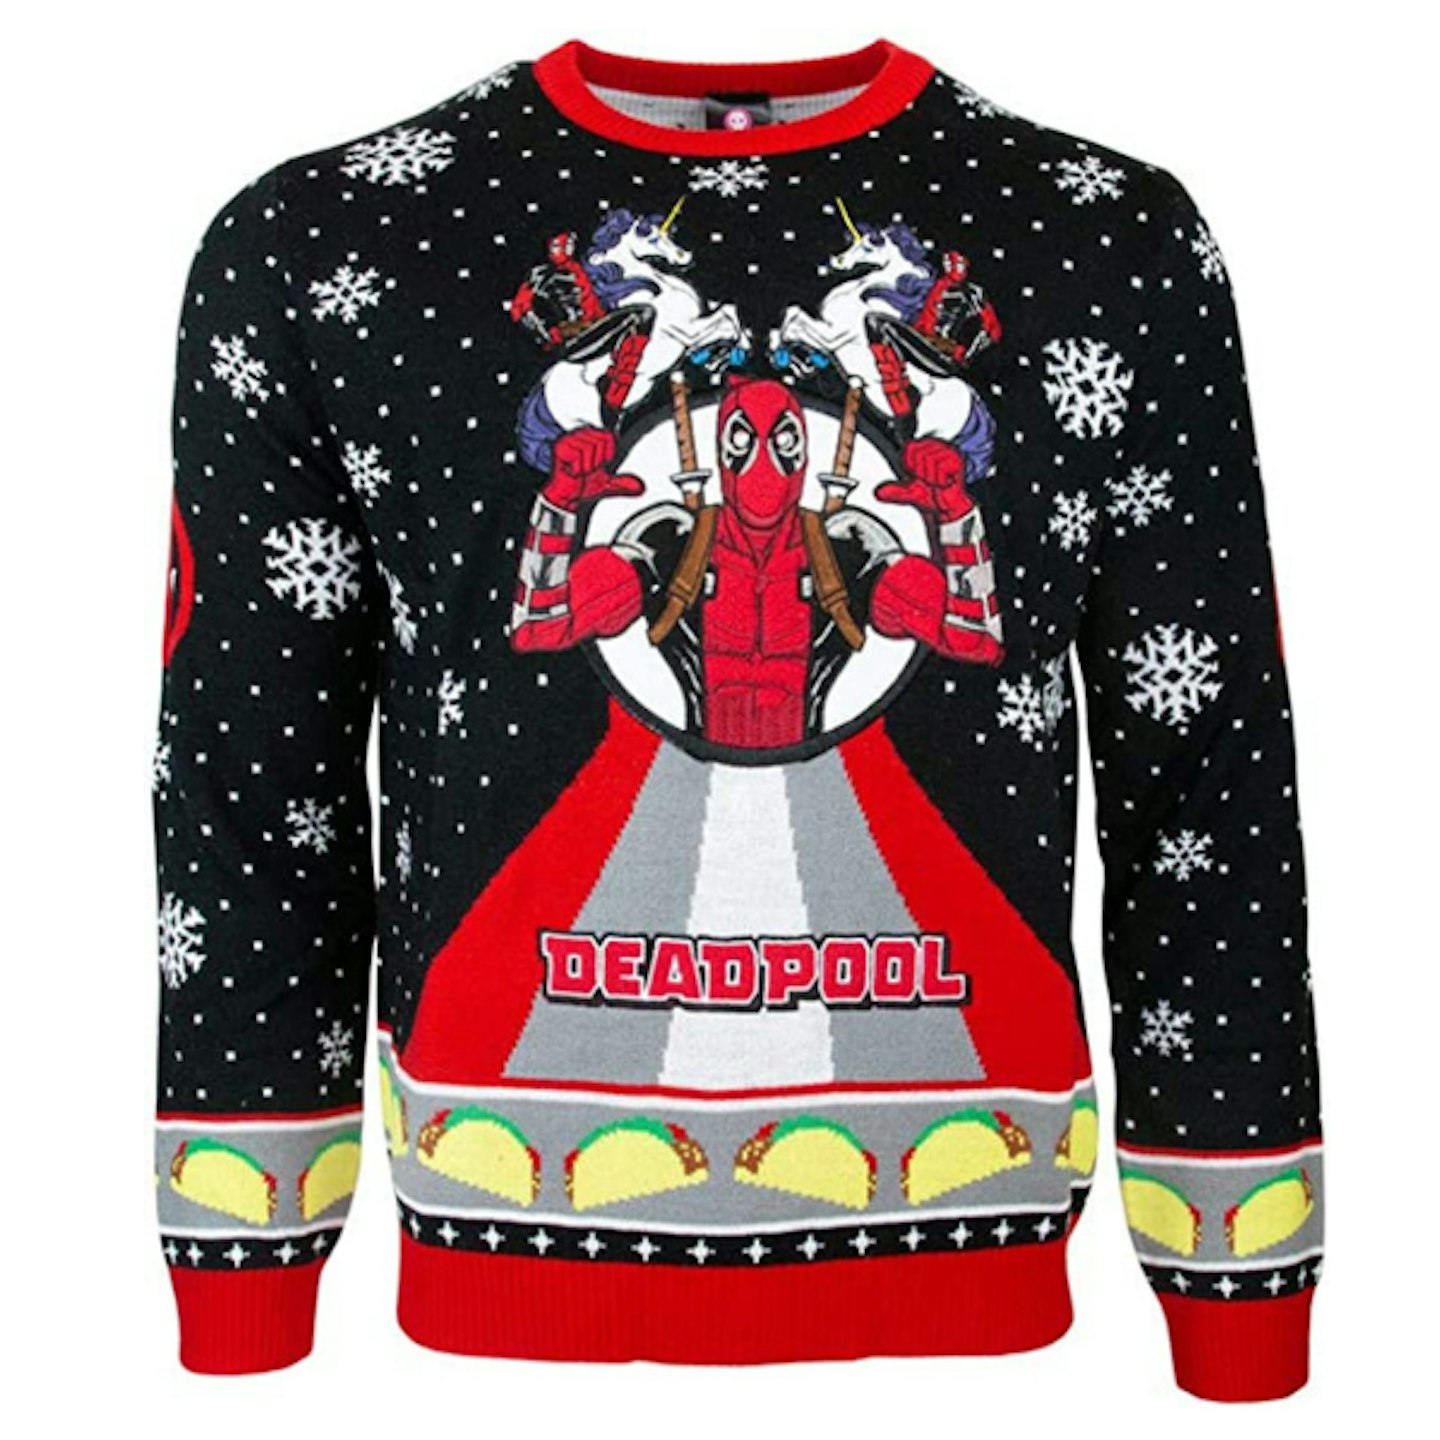 Deadpool Knitted Christmas Jumper Unisex for Men or Women - Ugly Sweater Marvel Gift